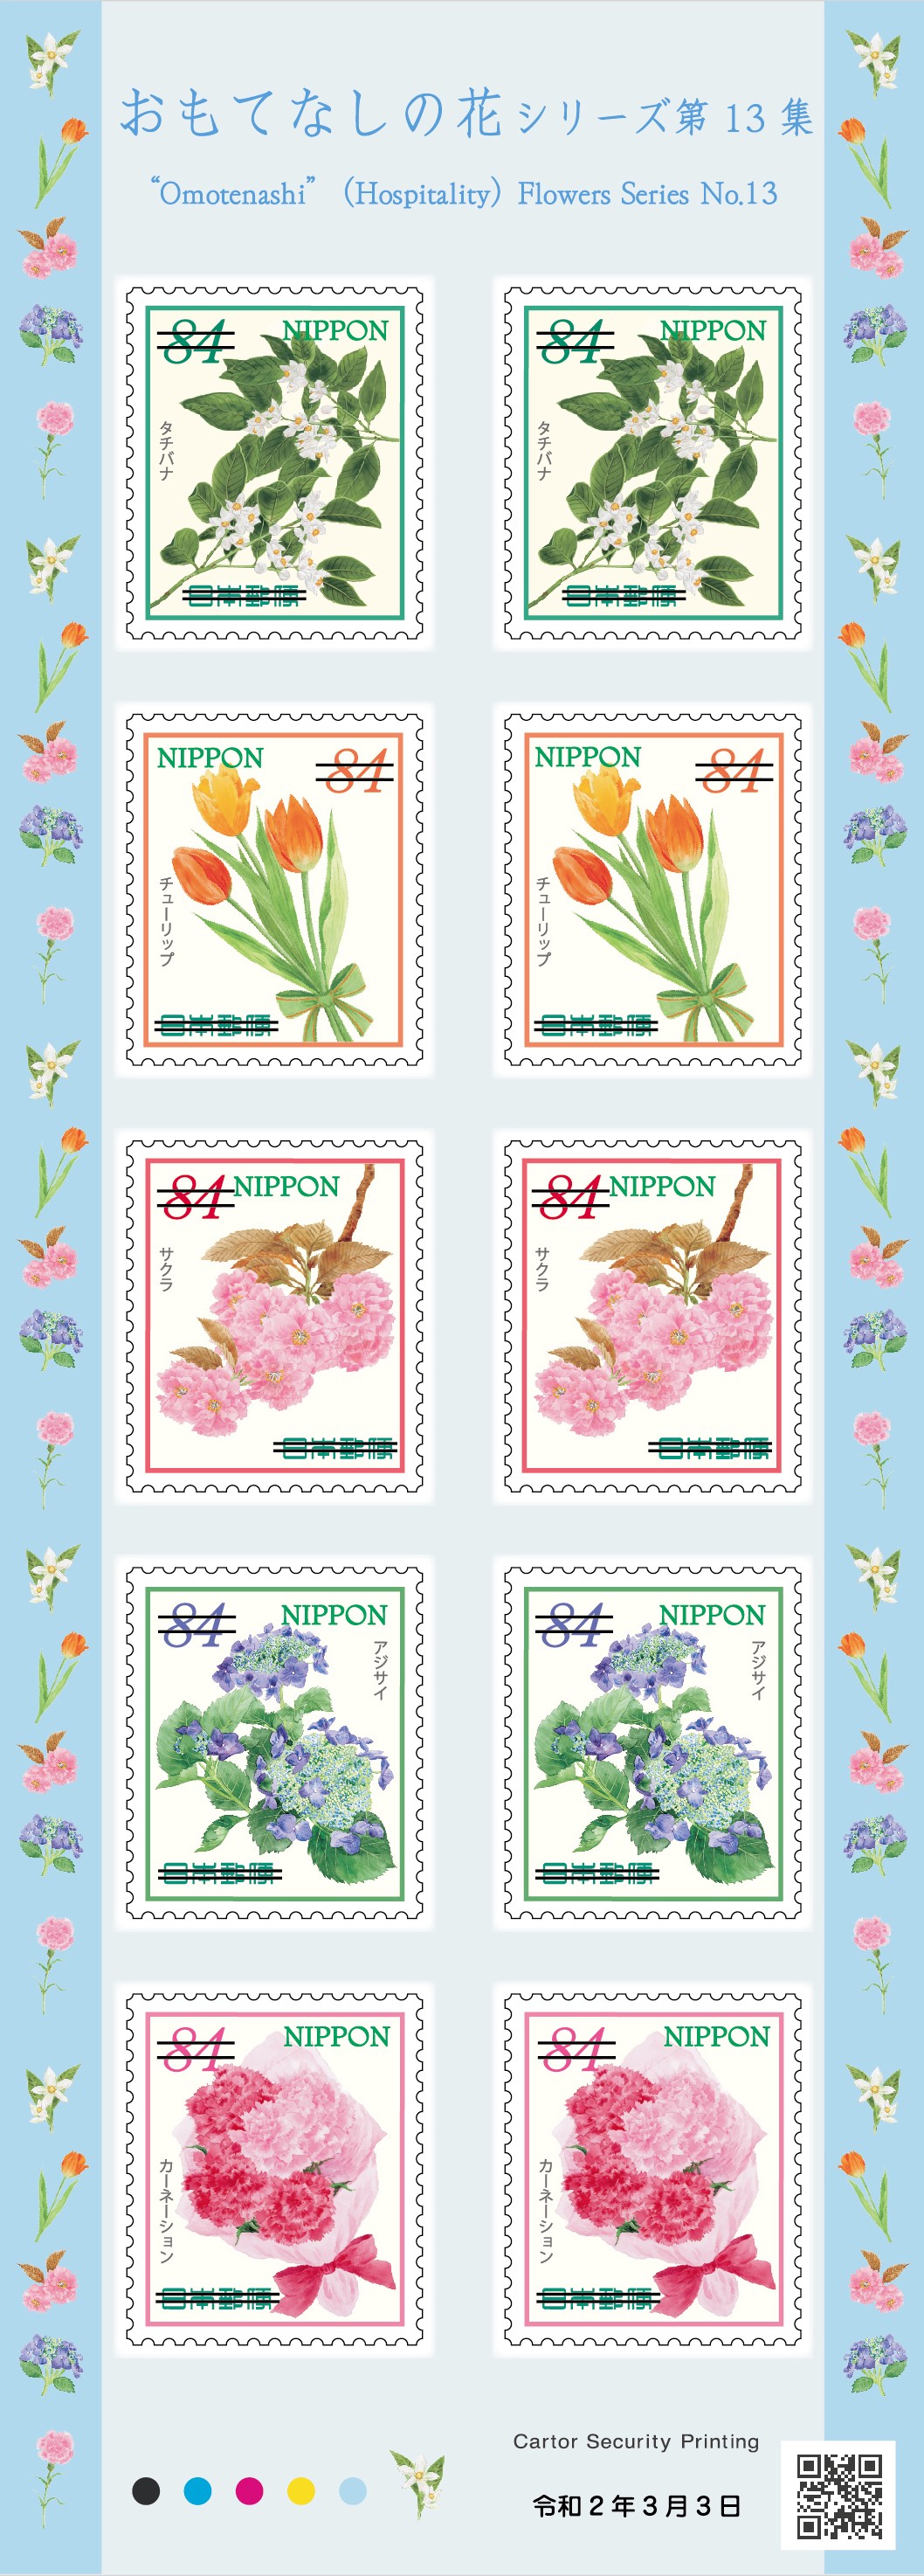 特殊切手 おもてなしの花シリーズ 第13集 | 日本郵便株式会社